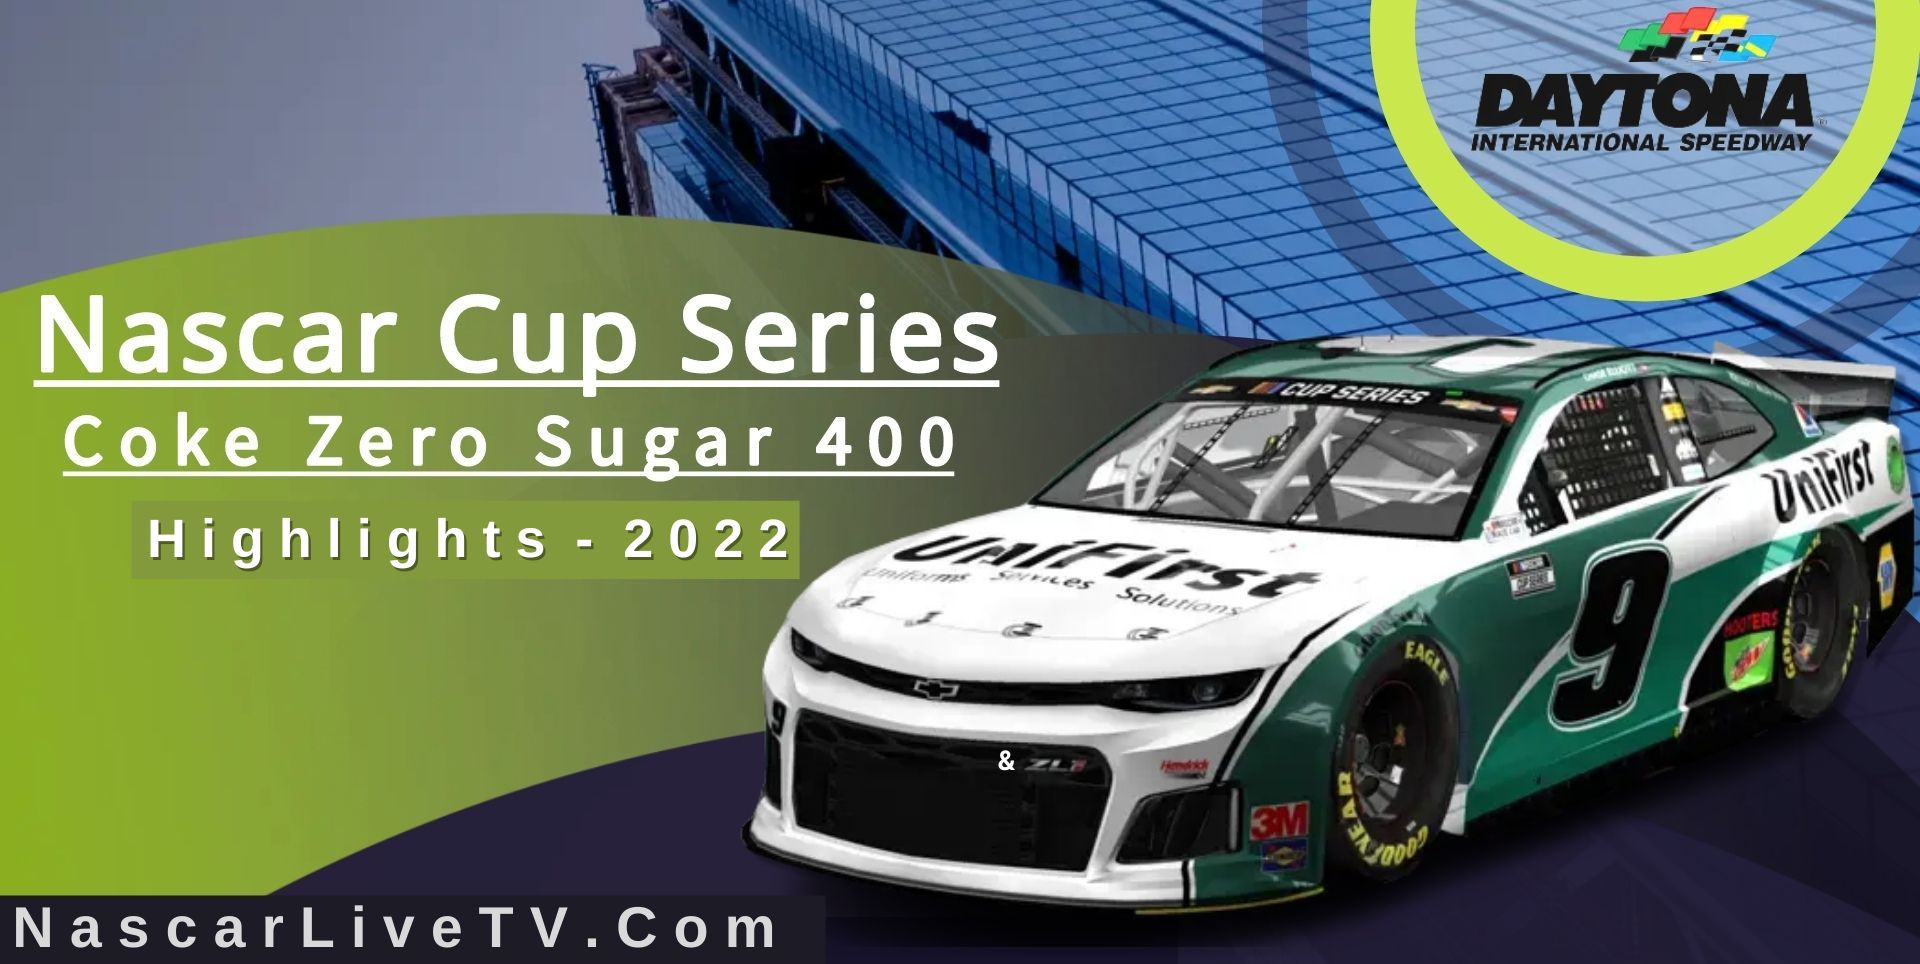 Coke Zero Sugar 400 Highlights NASCAR Cup Series 2022